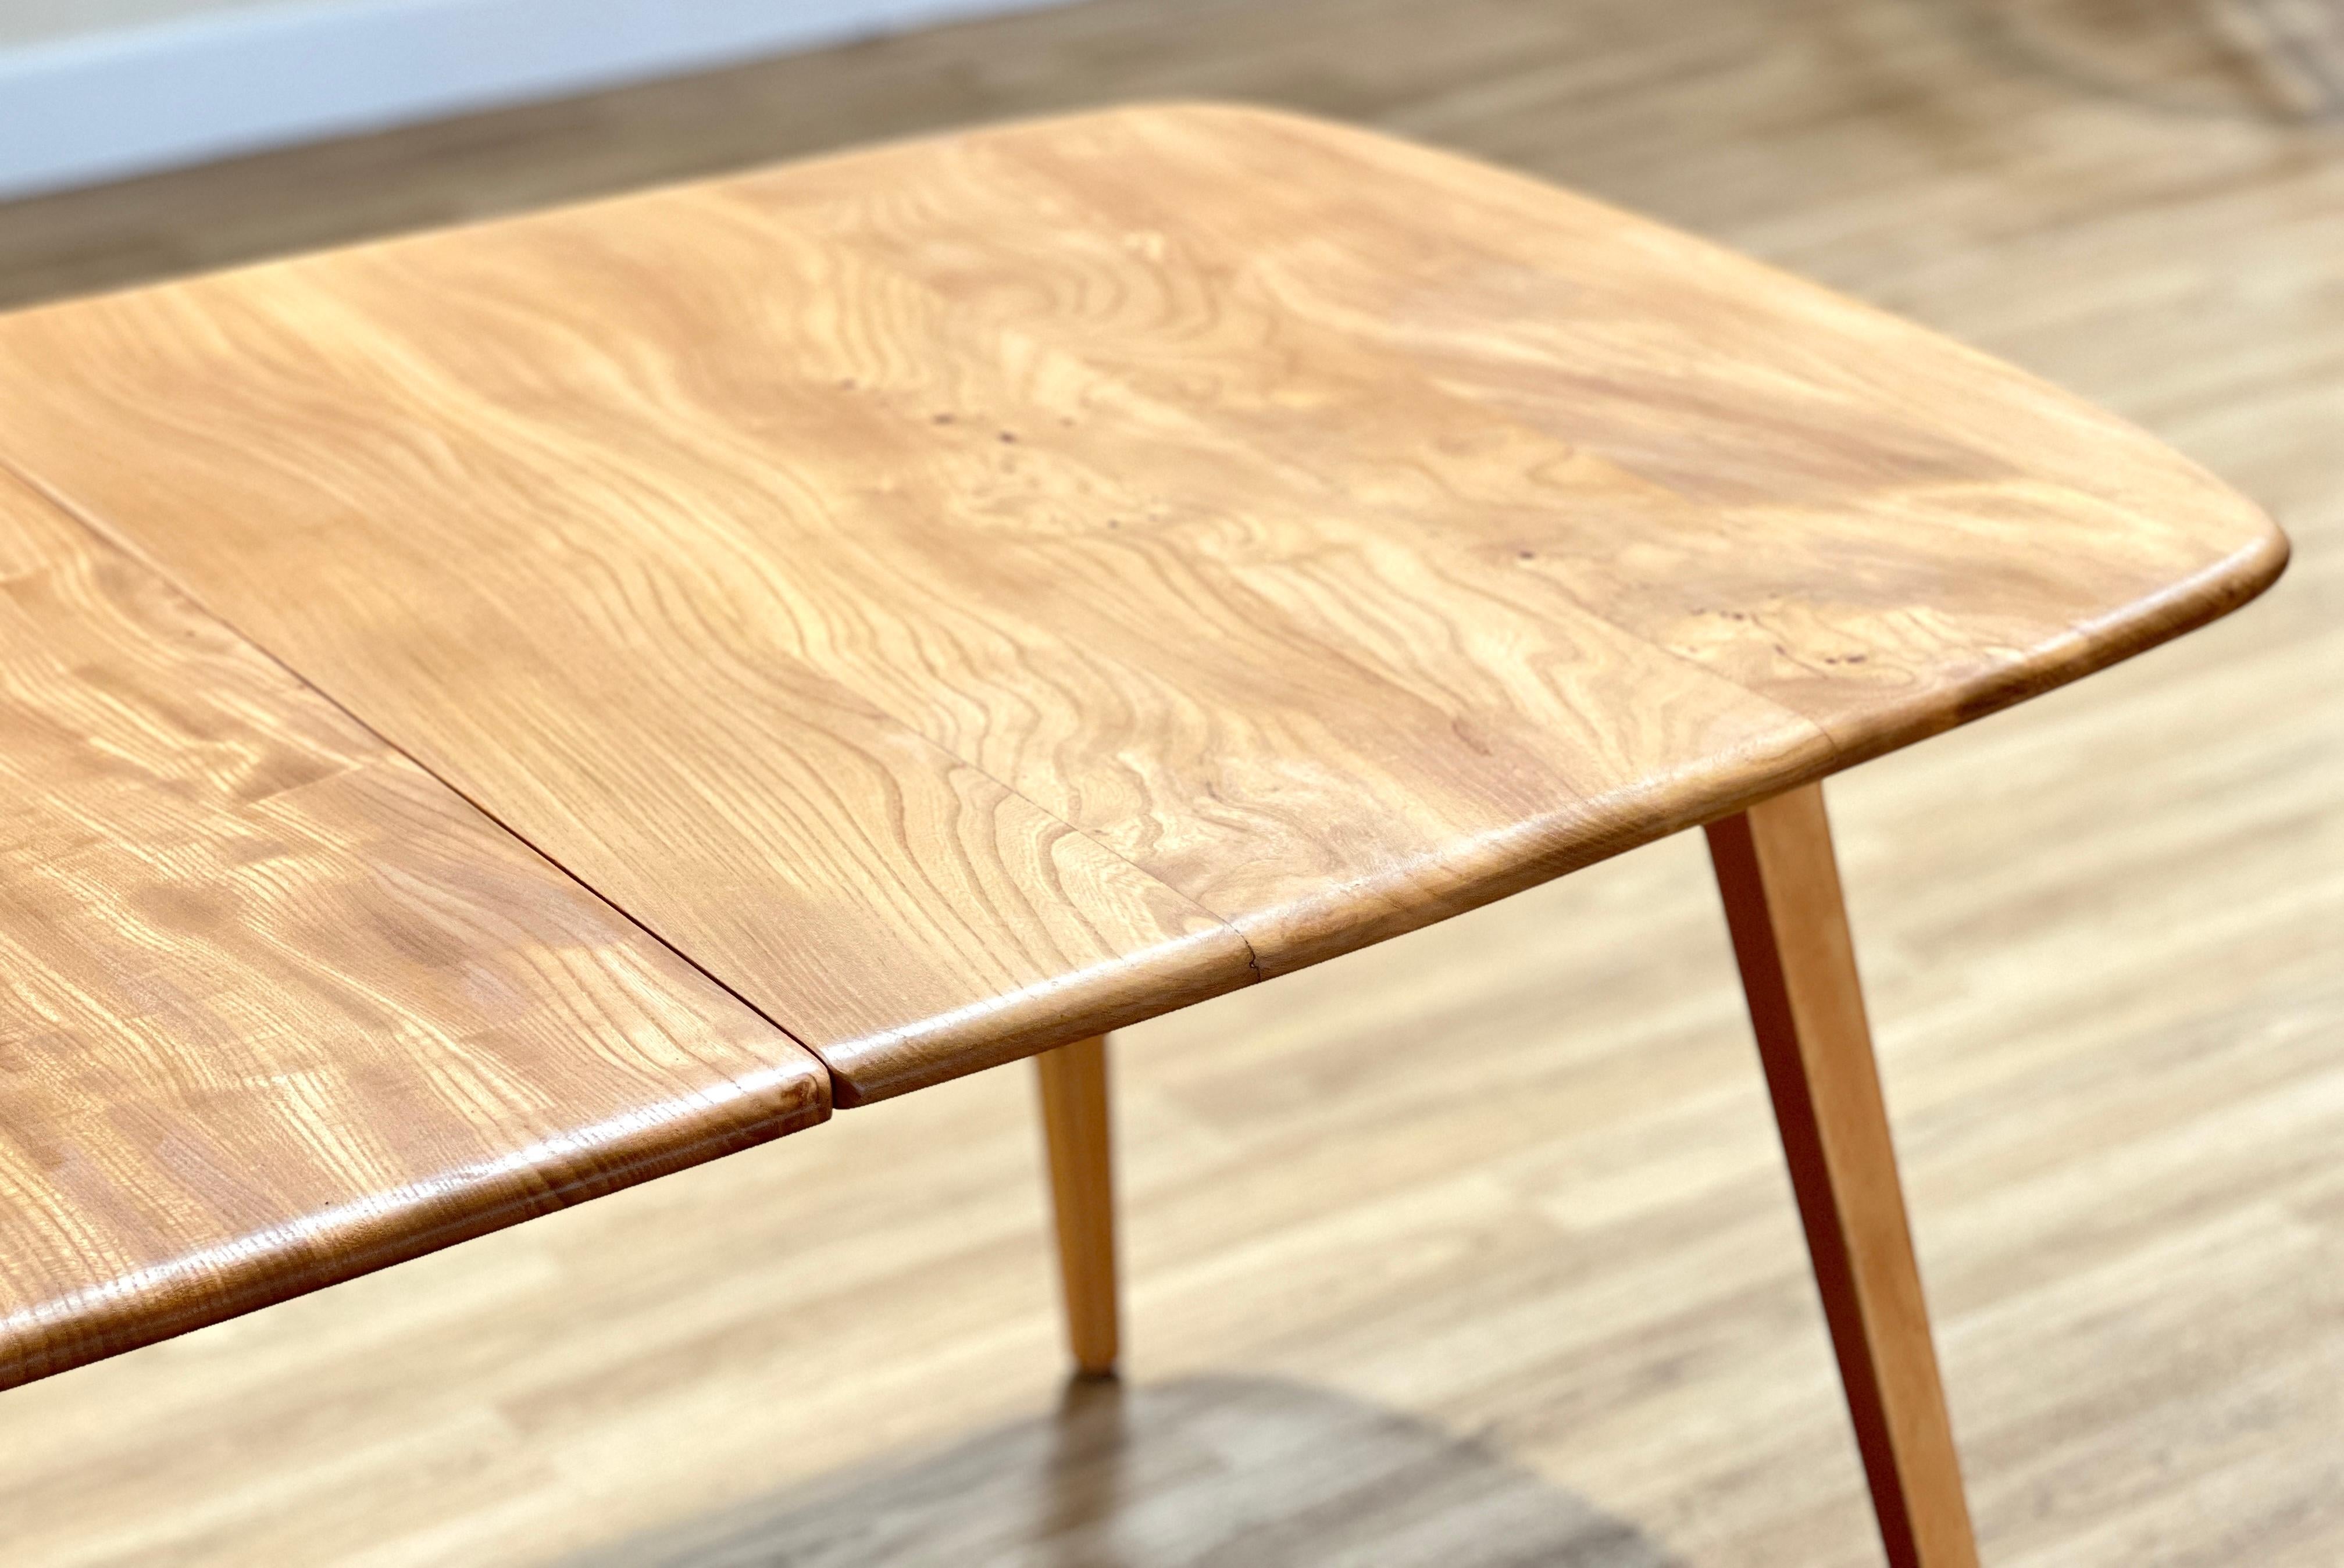 Cette superbe table à rallonge a été magnifiquement fabriquée à la main par le fabricant de meubles britannique Ercol et conçue par Lucian Ercoloni.

La table à manger extensible du milieu du siècle est un meuble élégant et fonctionnel qui s'intègre